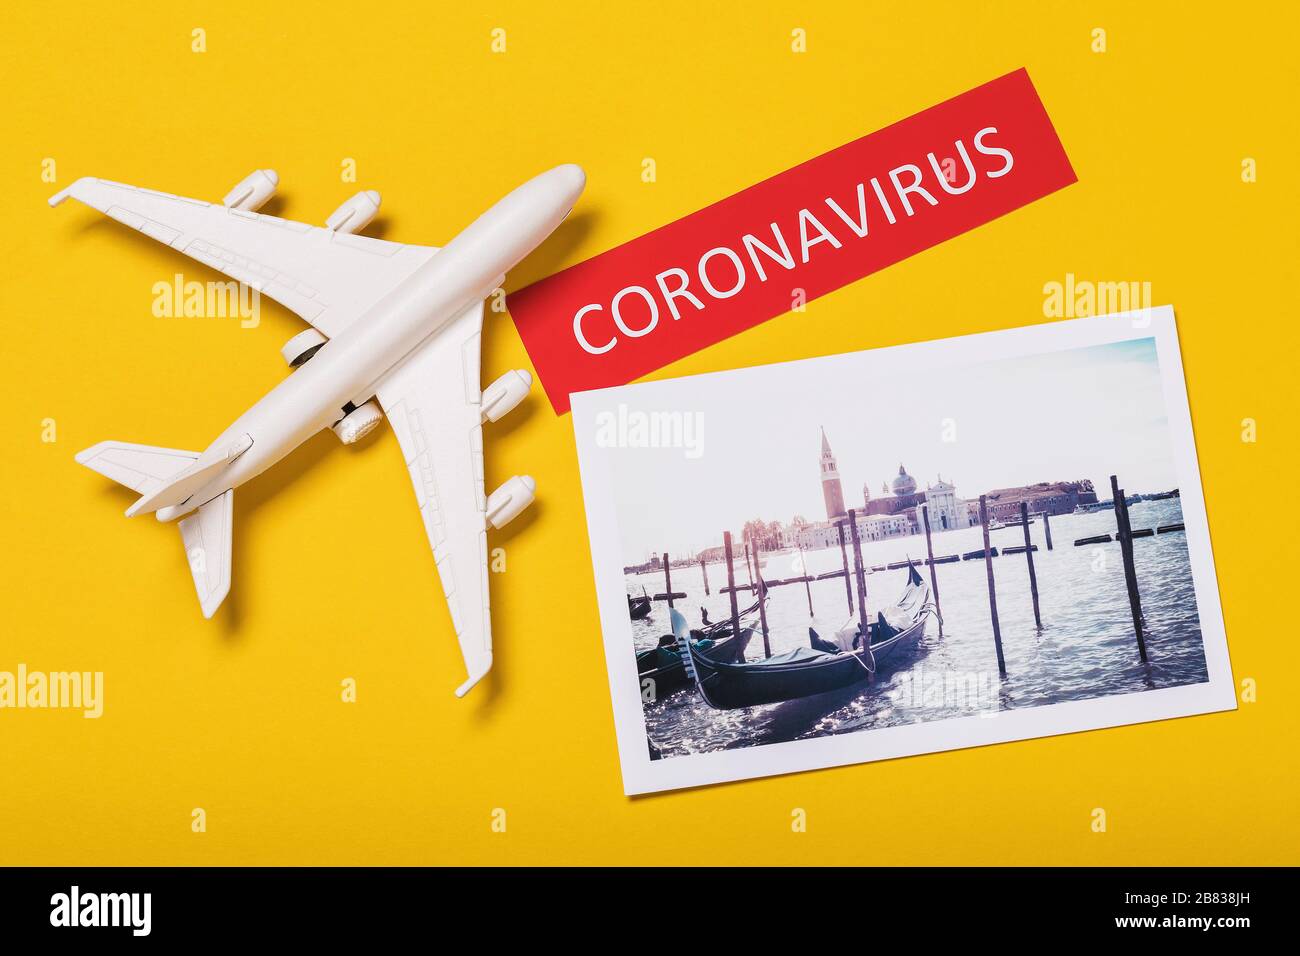 Jouet avion, un tag avec l'inscription et une photo de vacances sur un fond jaune. Concept de coronavirus en Italie Banque D'Images